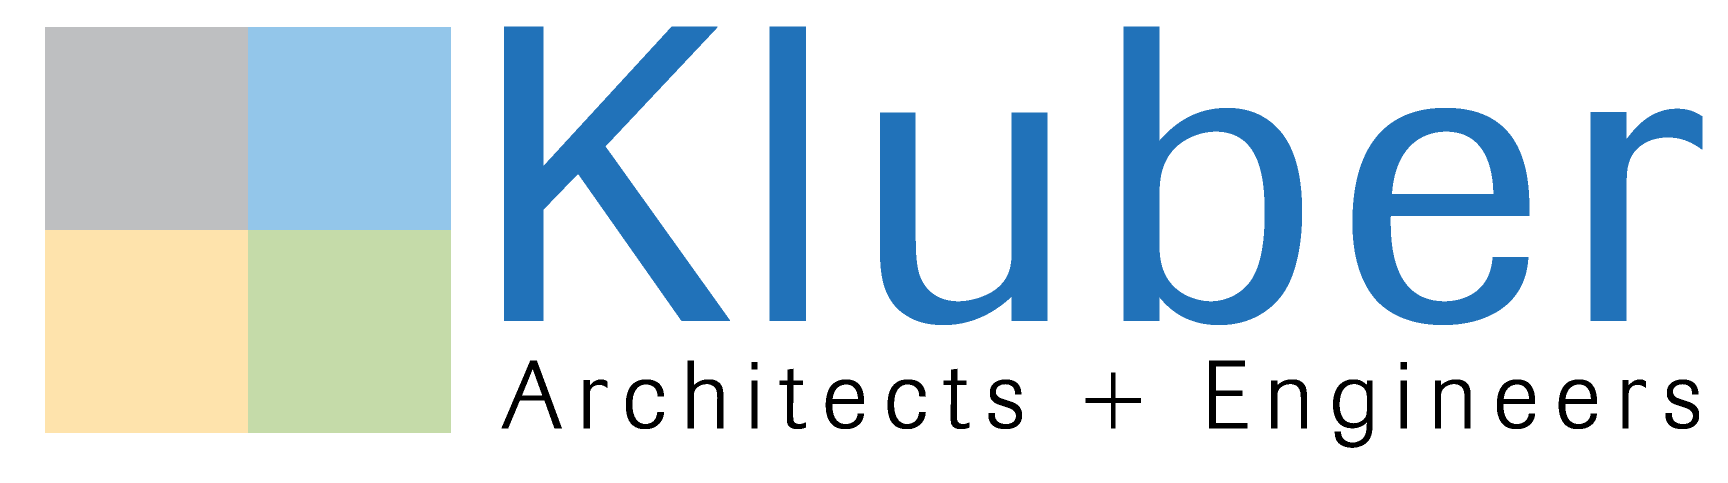 Kluber-Logo